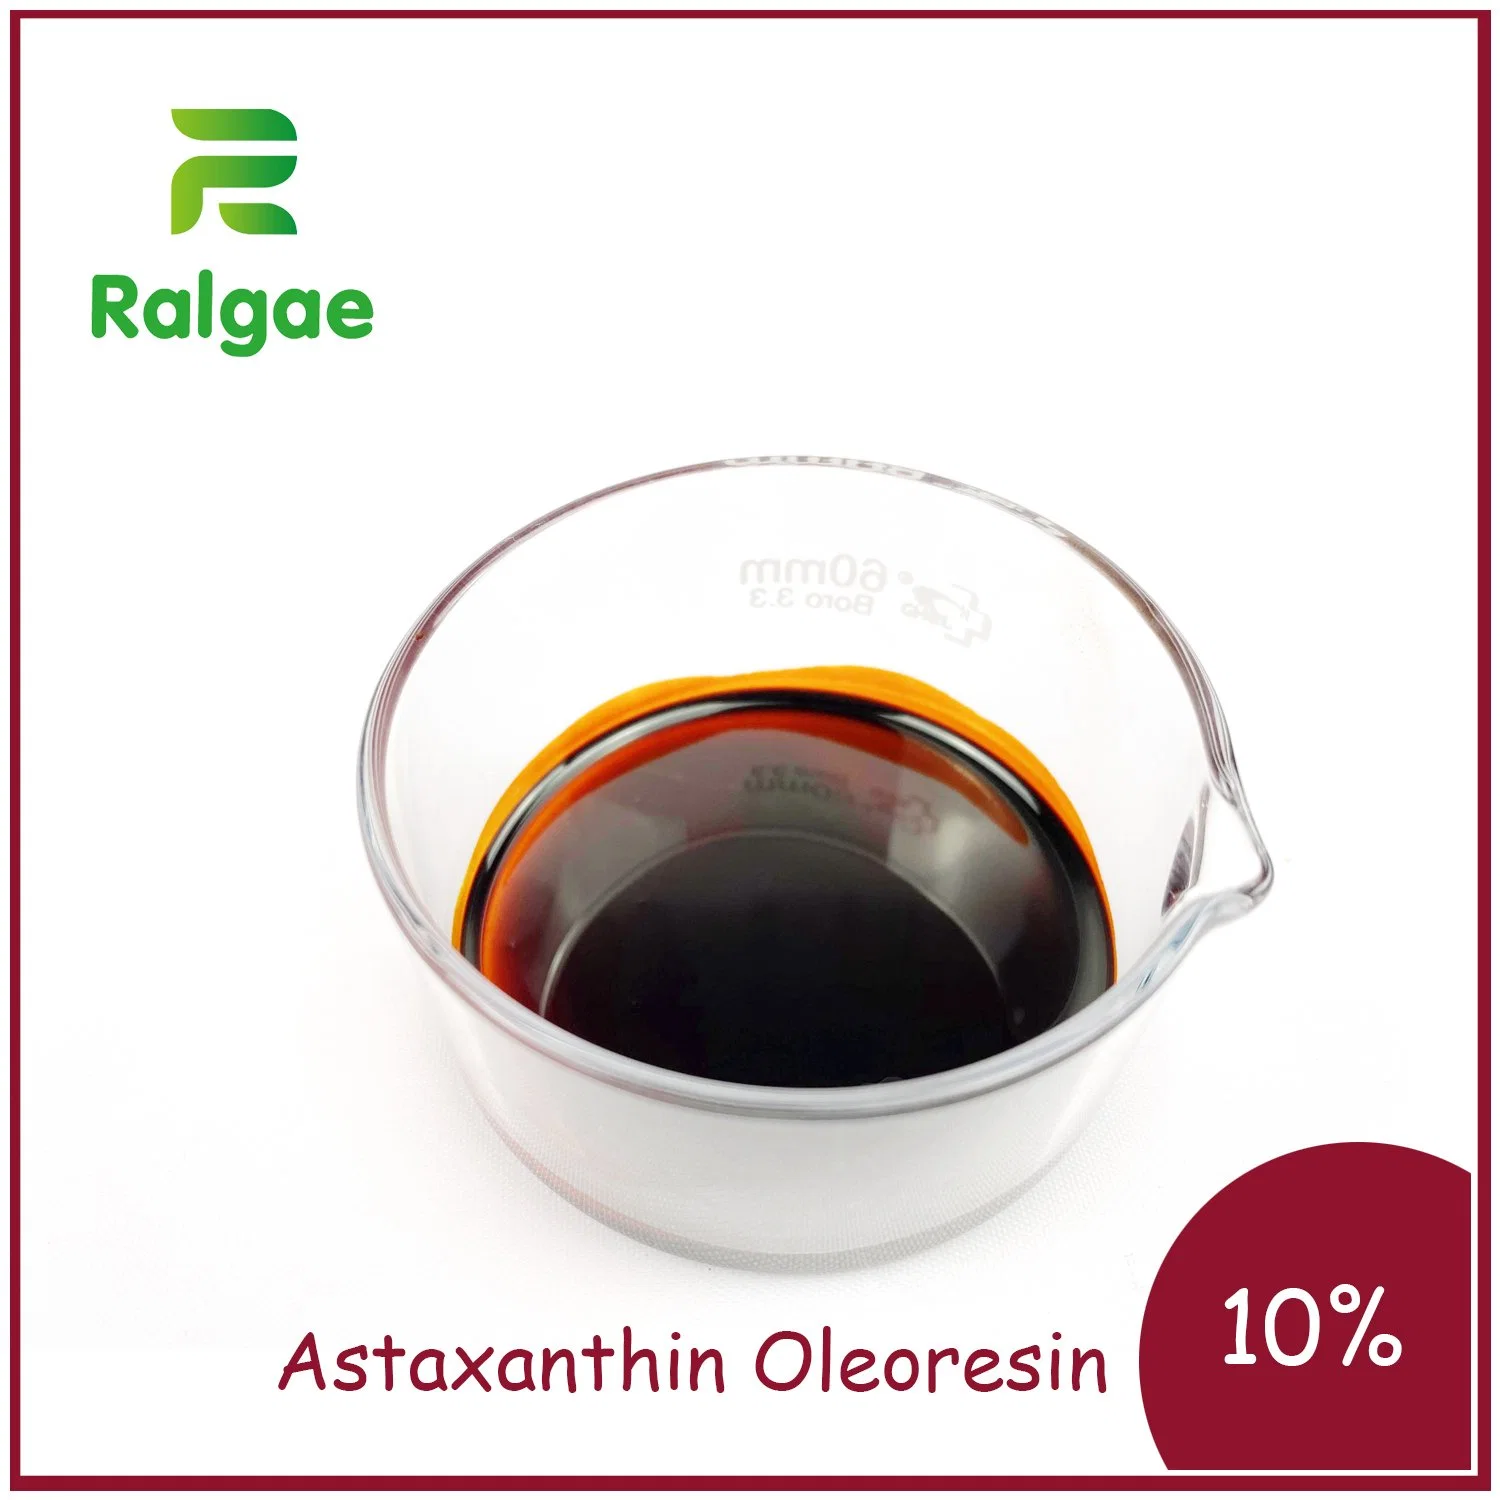 Извлеките Астаксантин Oleoresin пищевая добавка астаксантин